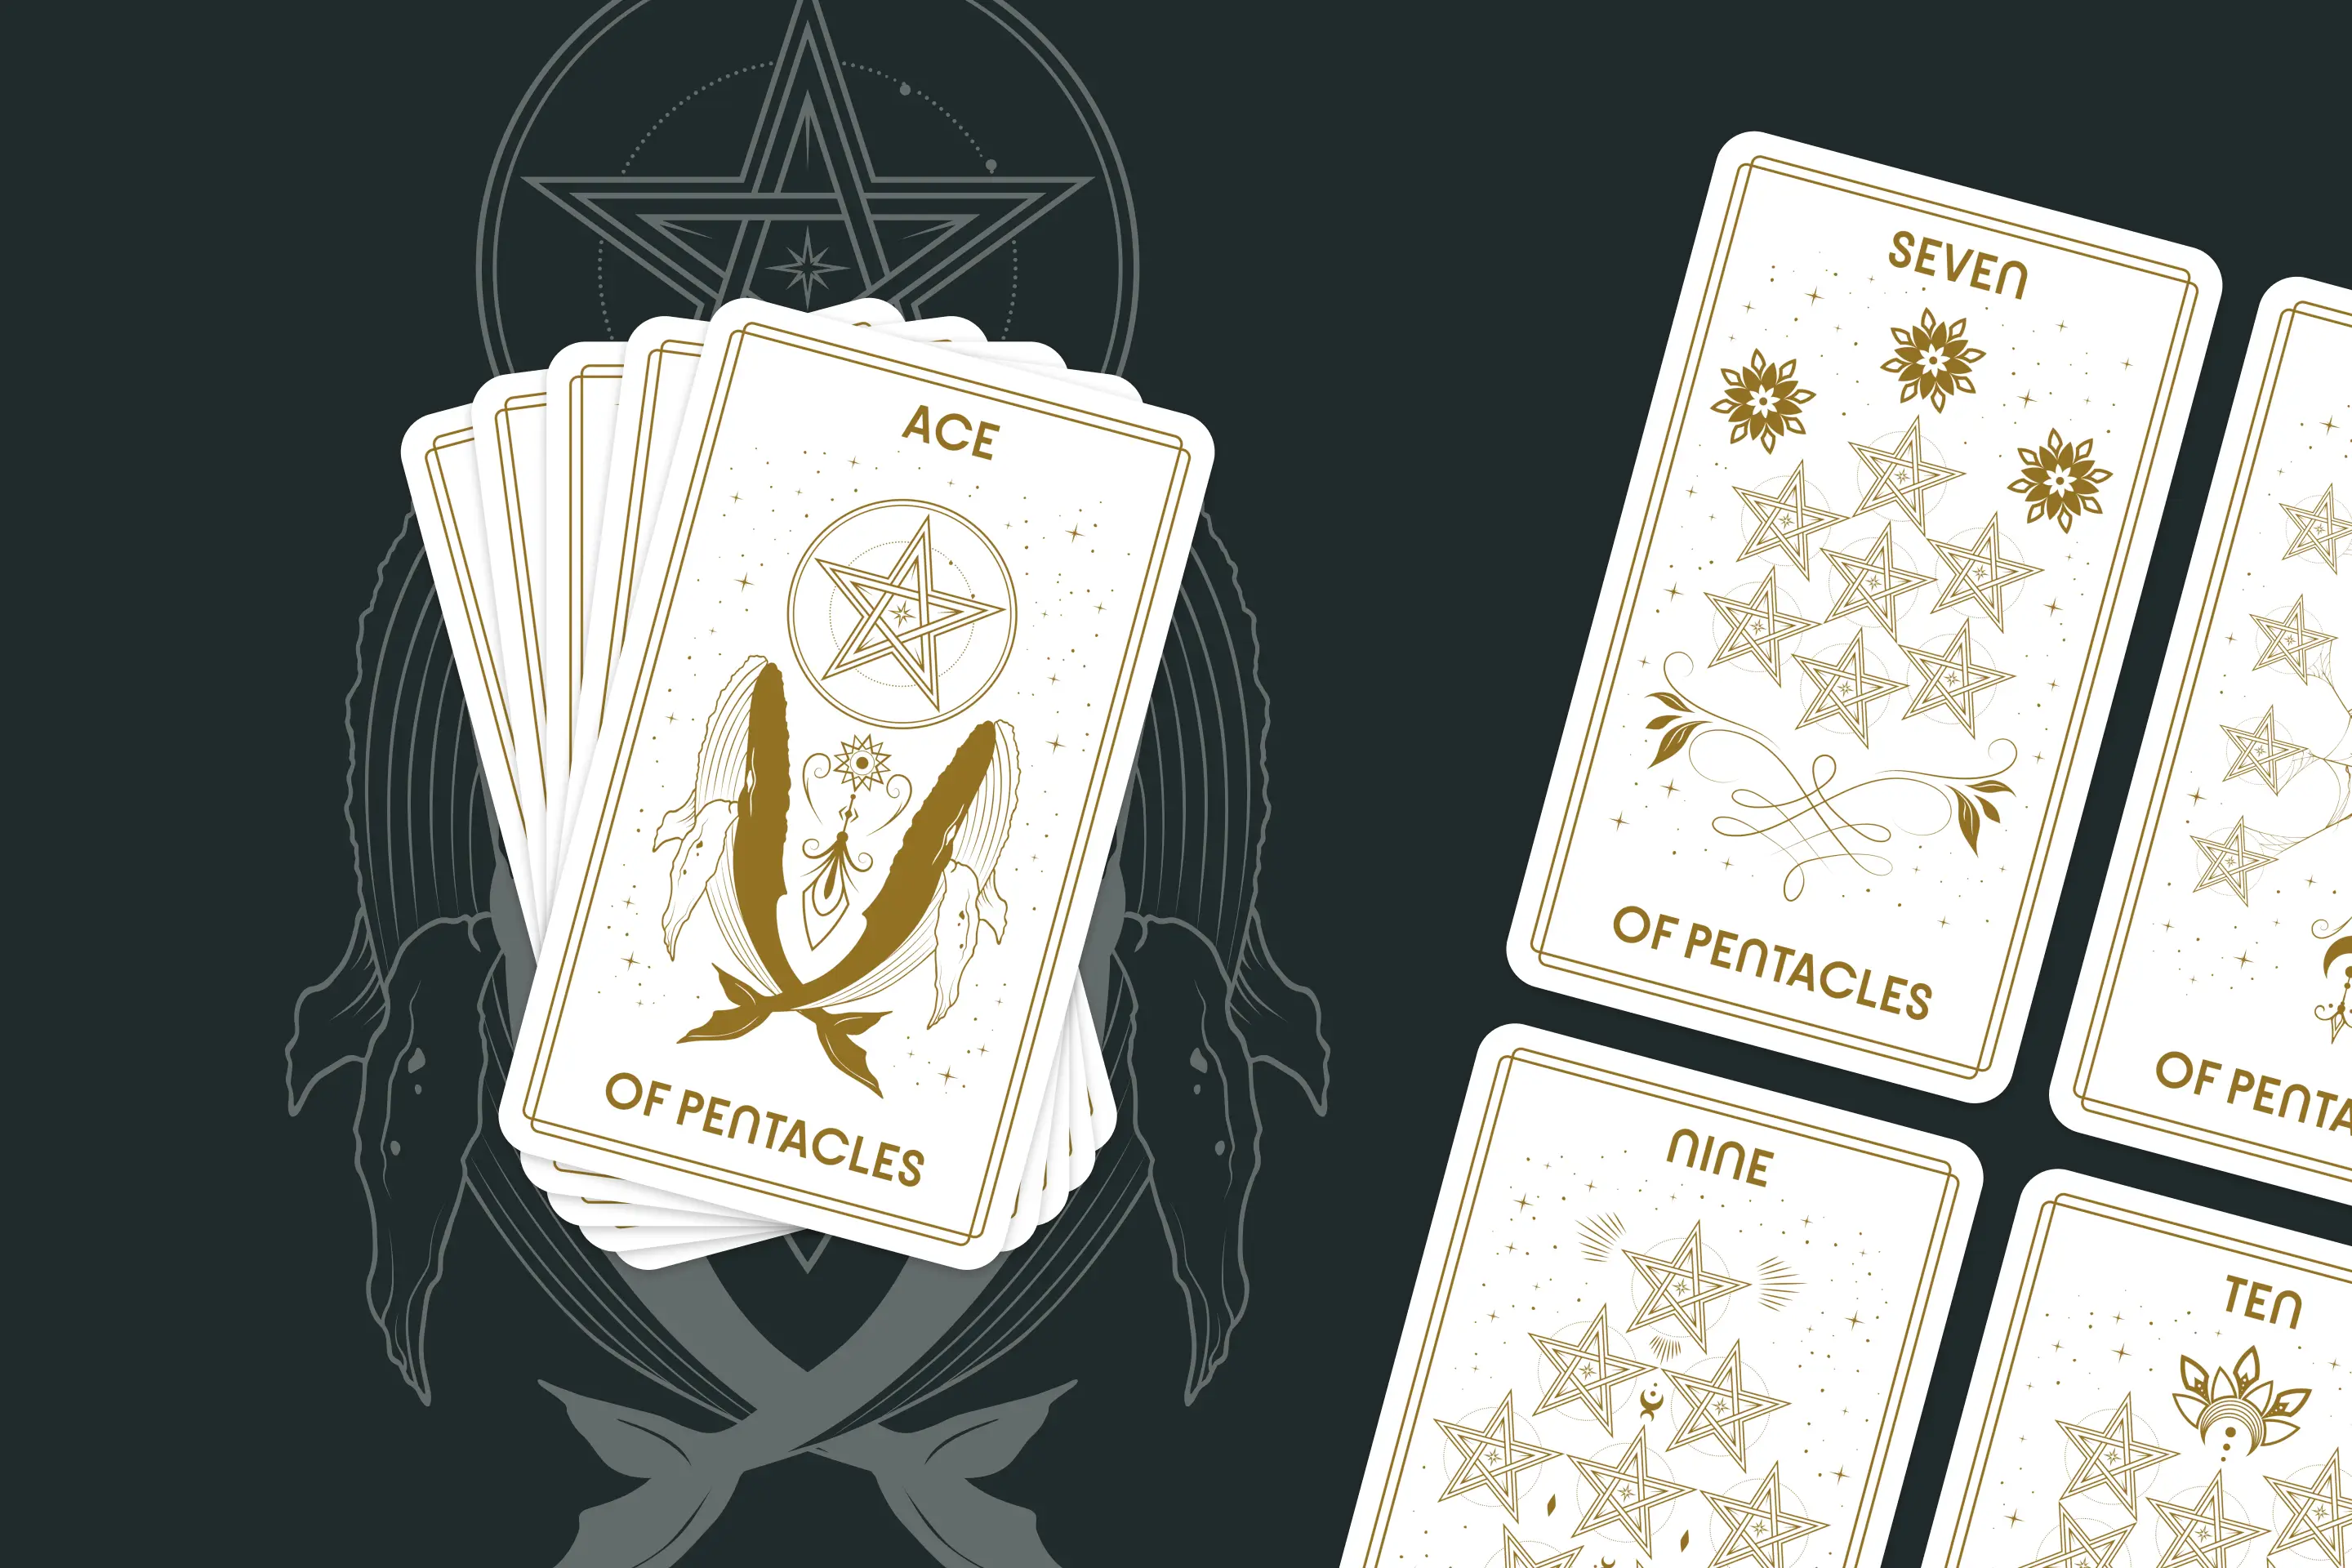 Suit of Pentacles Tarot Cards (Minor Arcana)